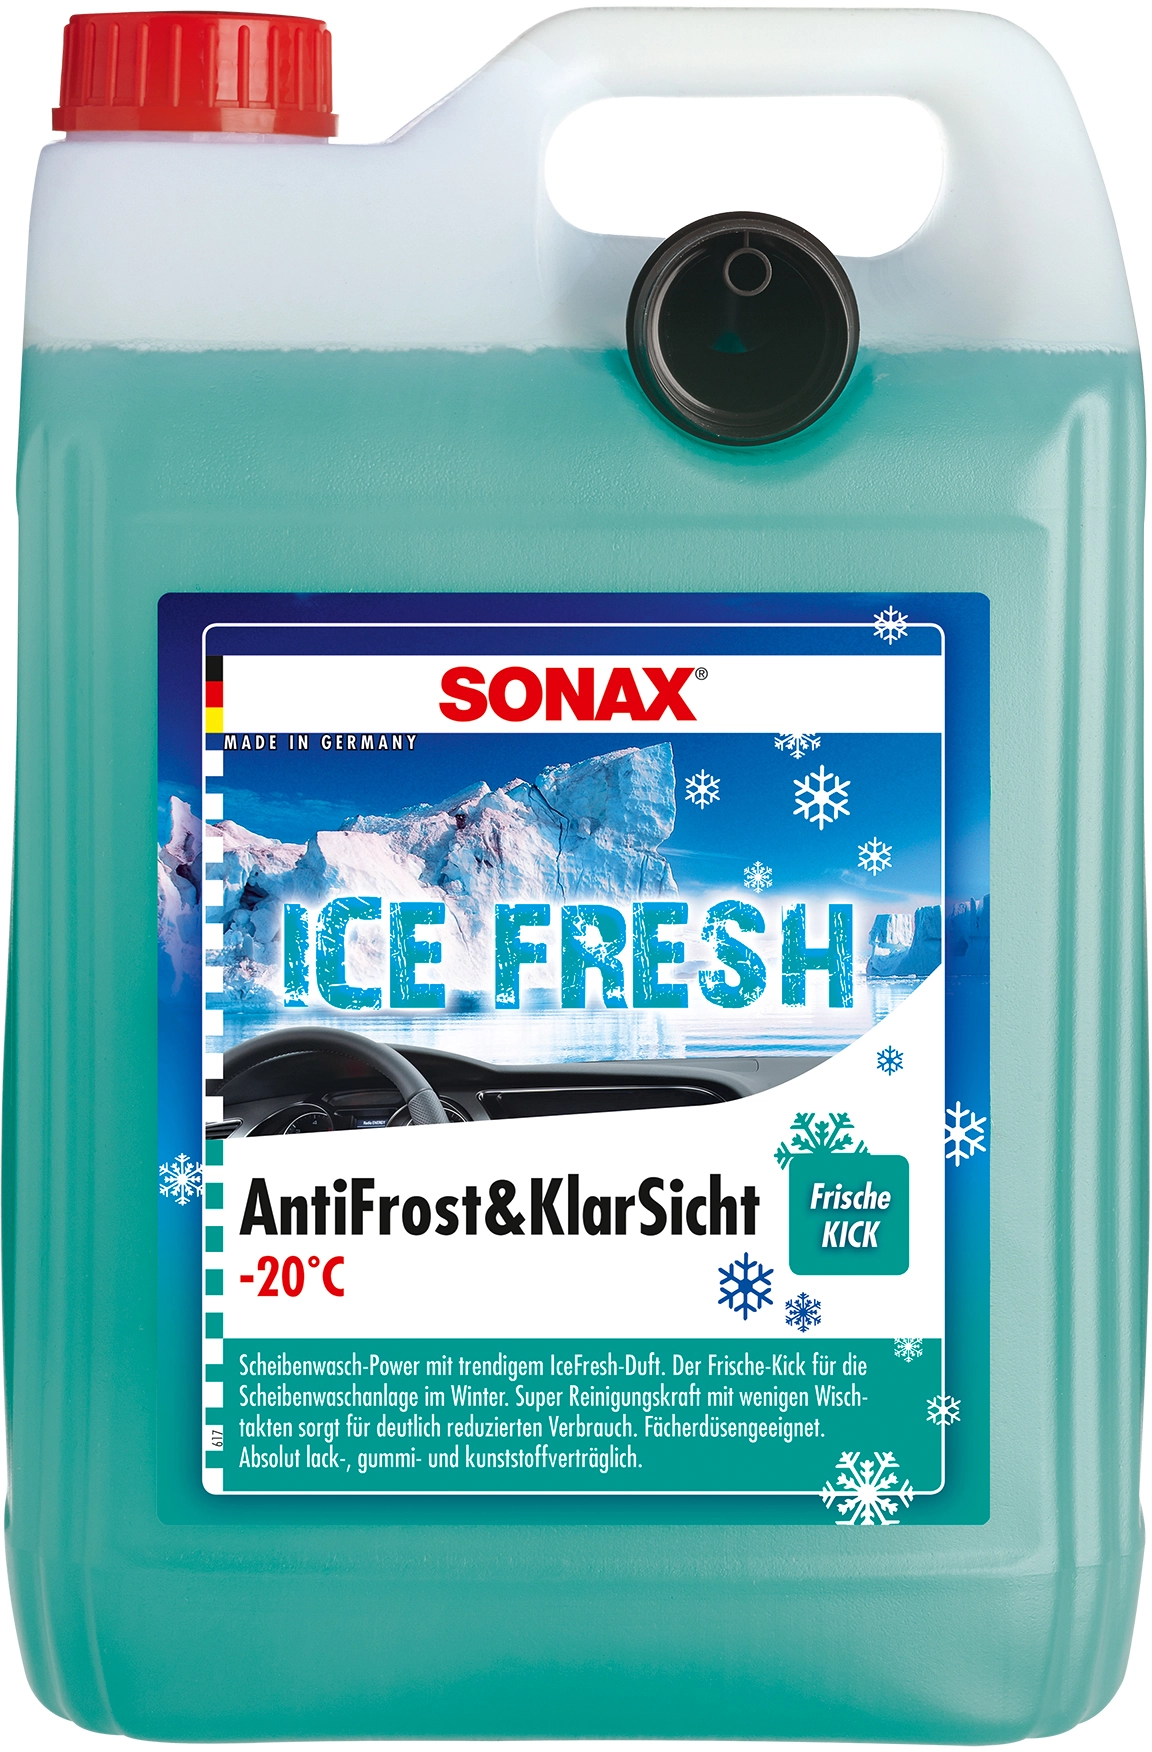 Sotel  Sonax 332300 Scheiben-Frostschutz Scheibenwaschanlage 1l